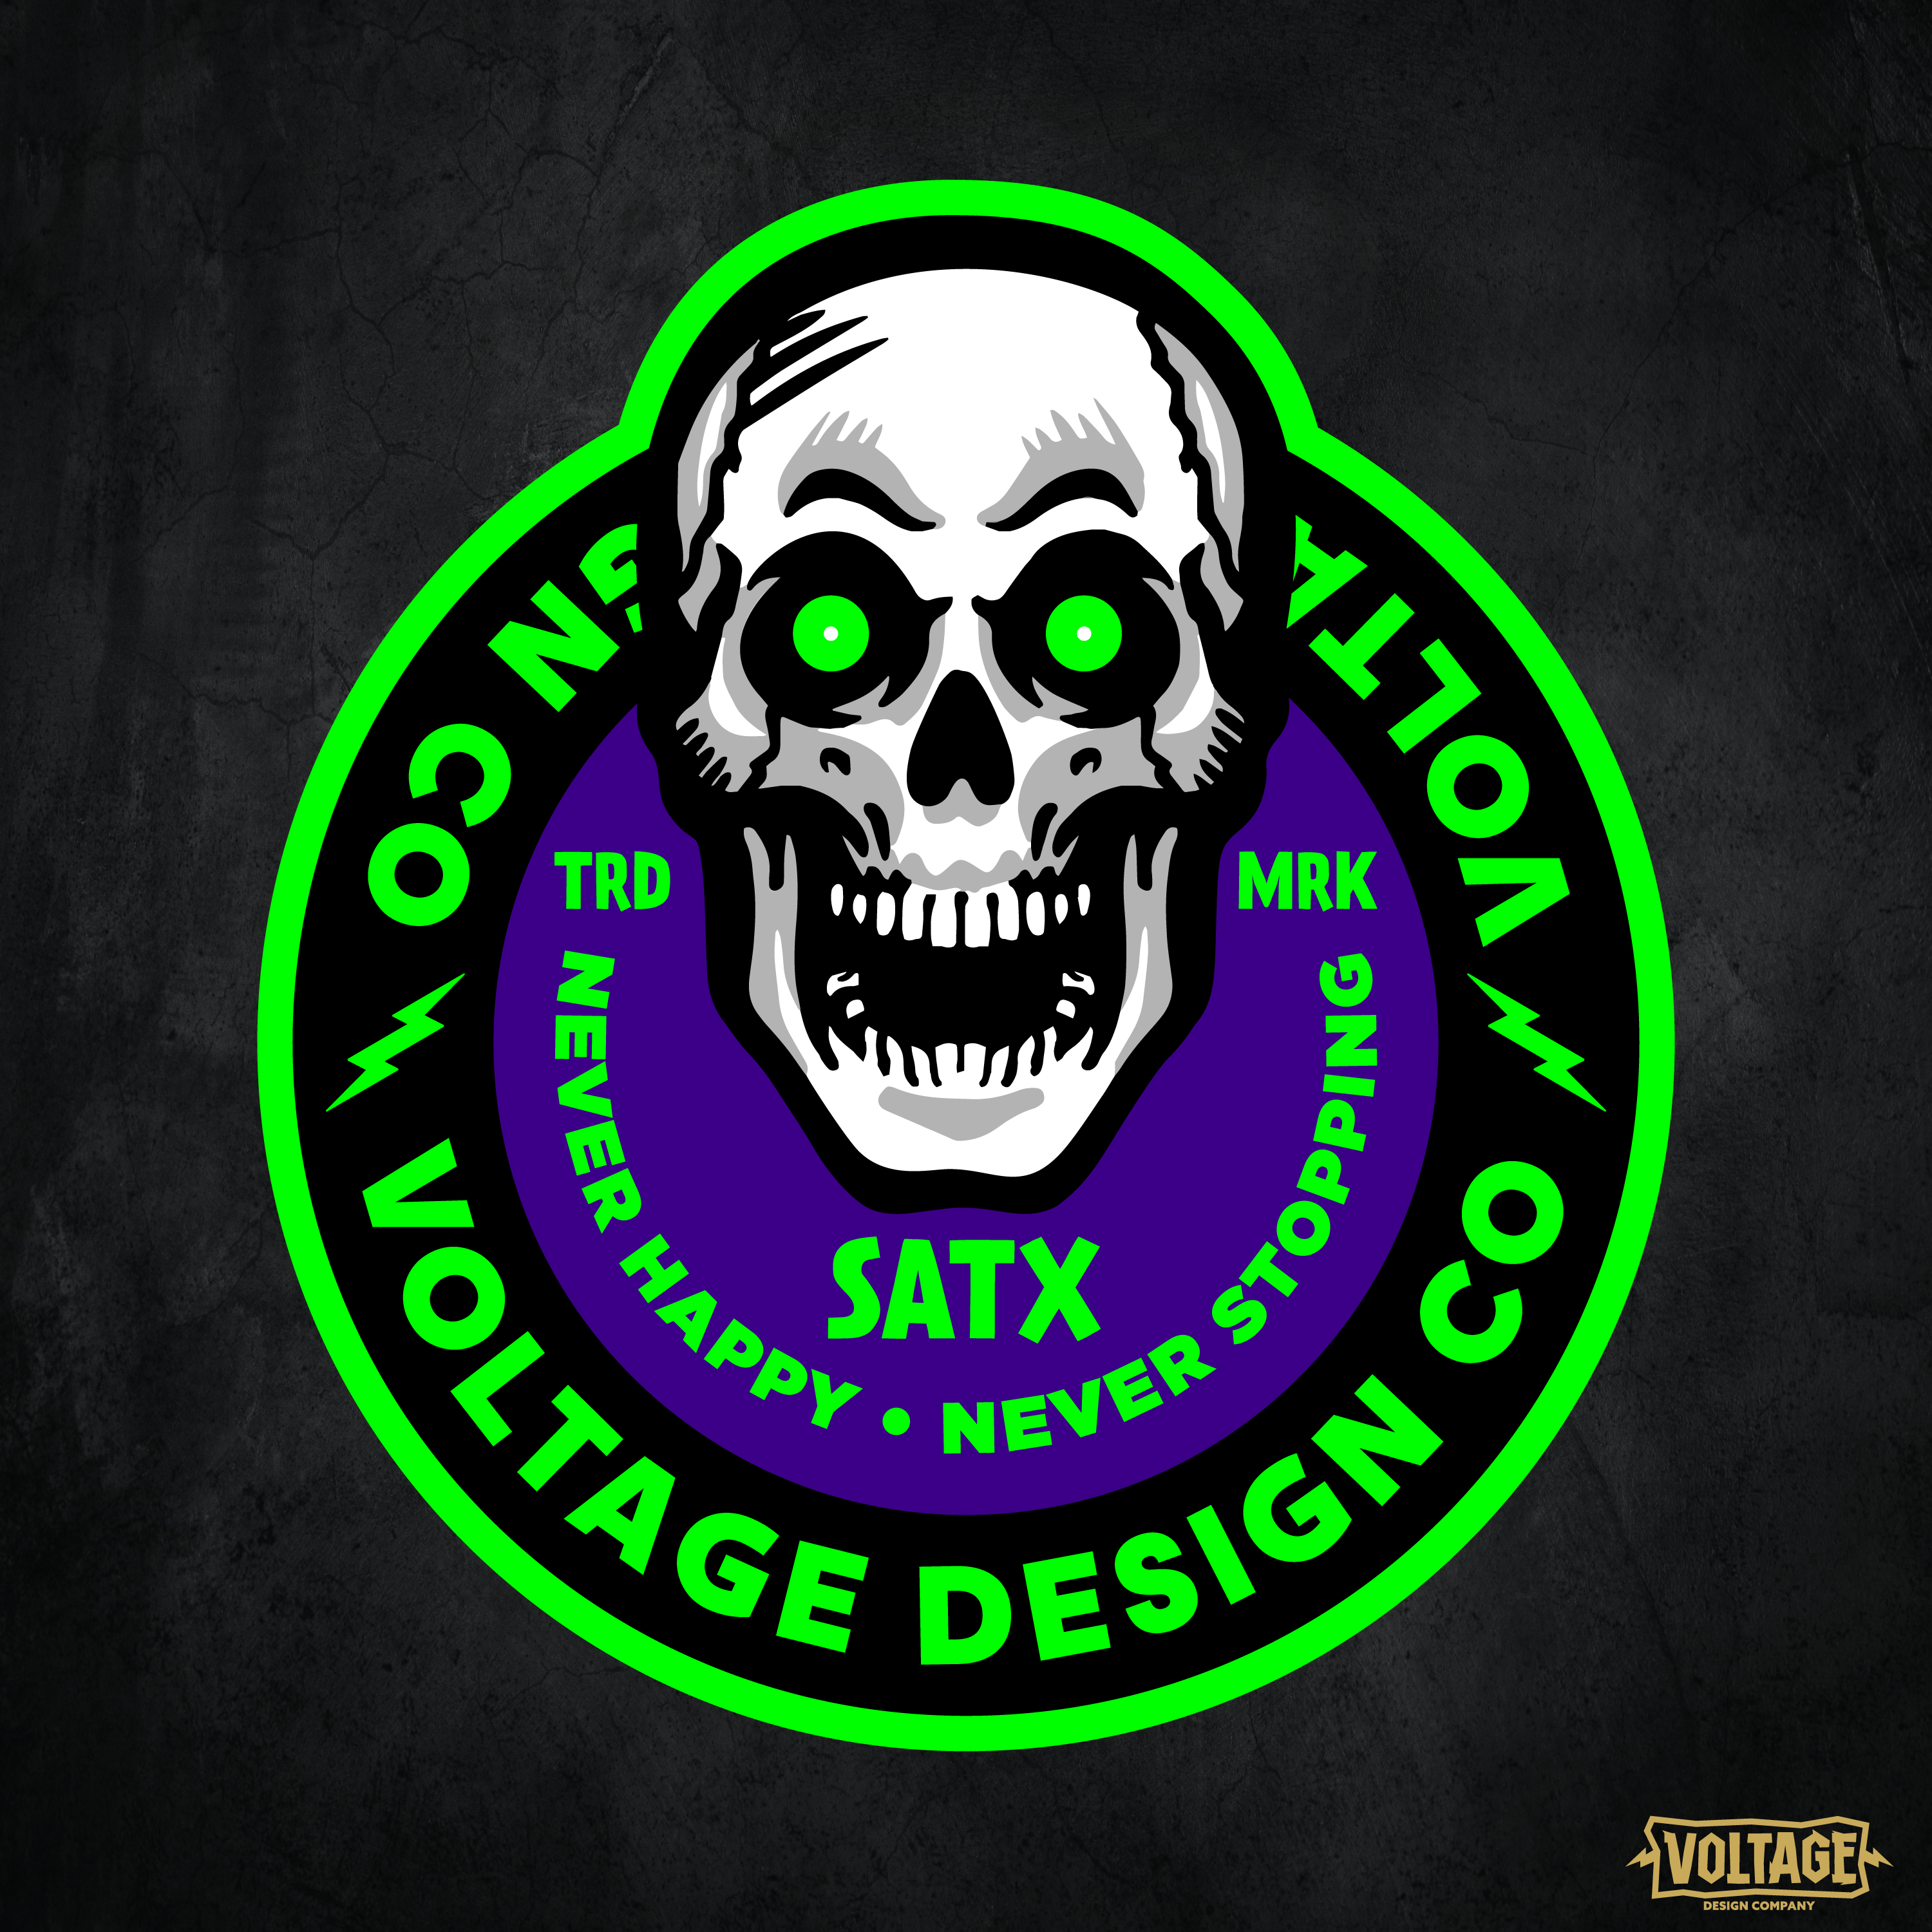 Voltage Design Co. on LogoLounge